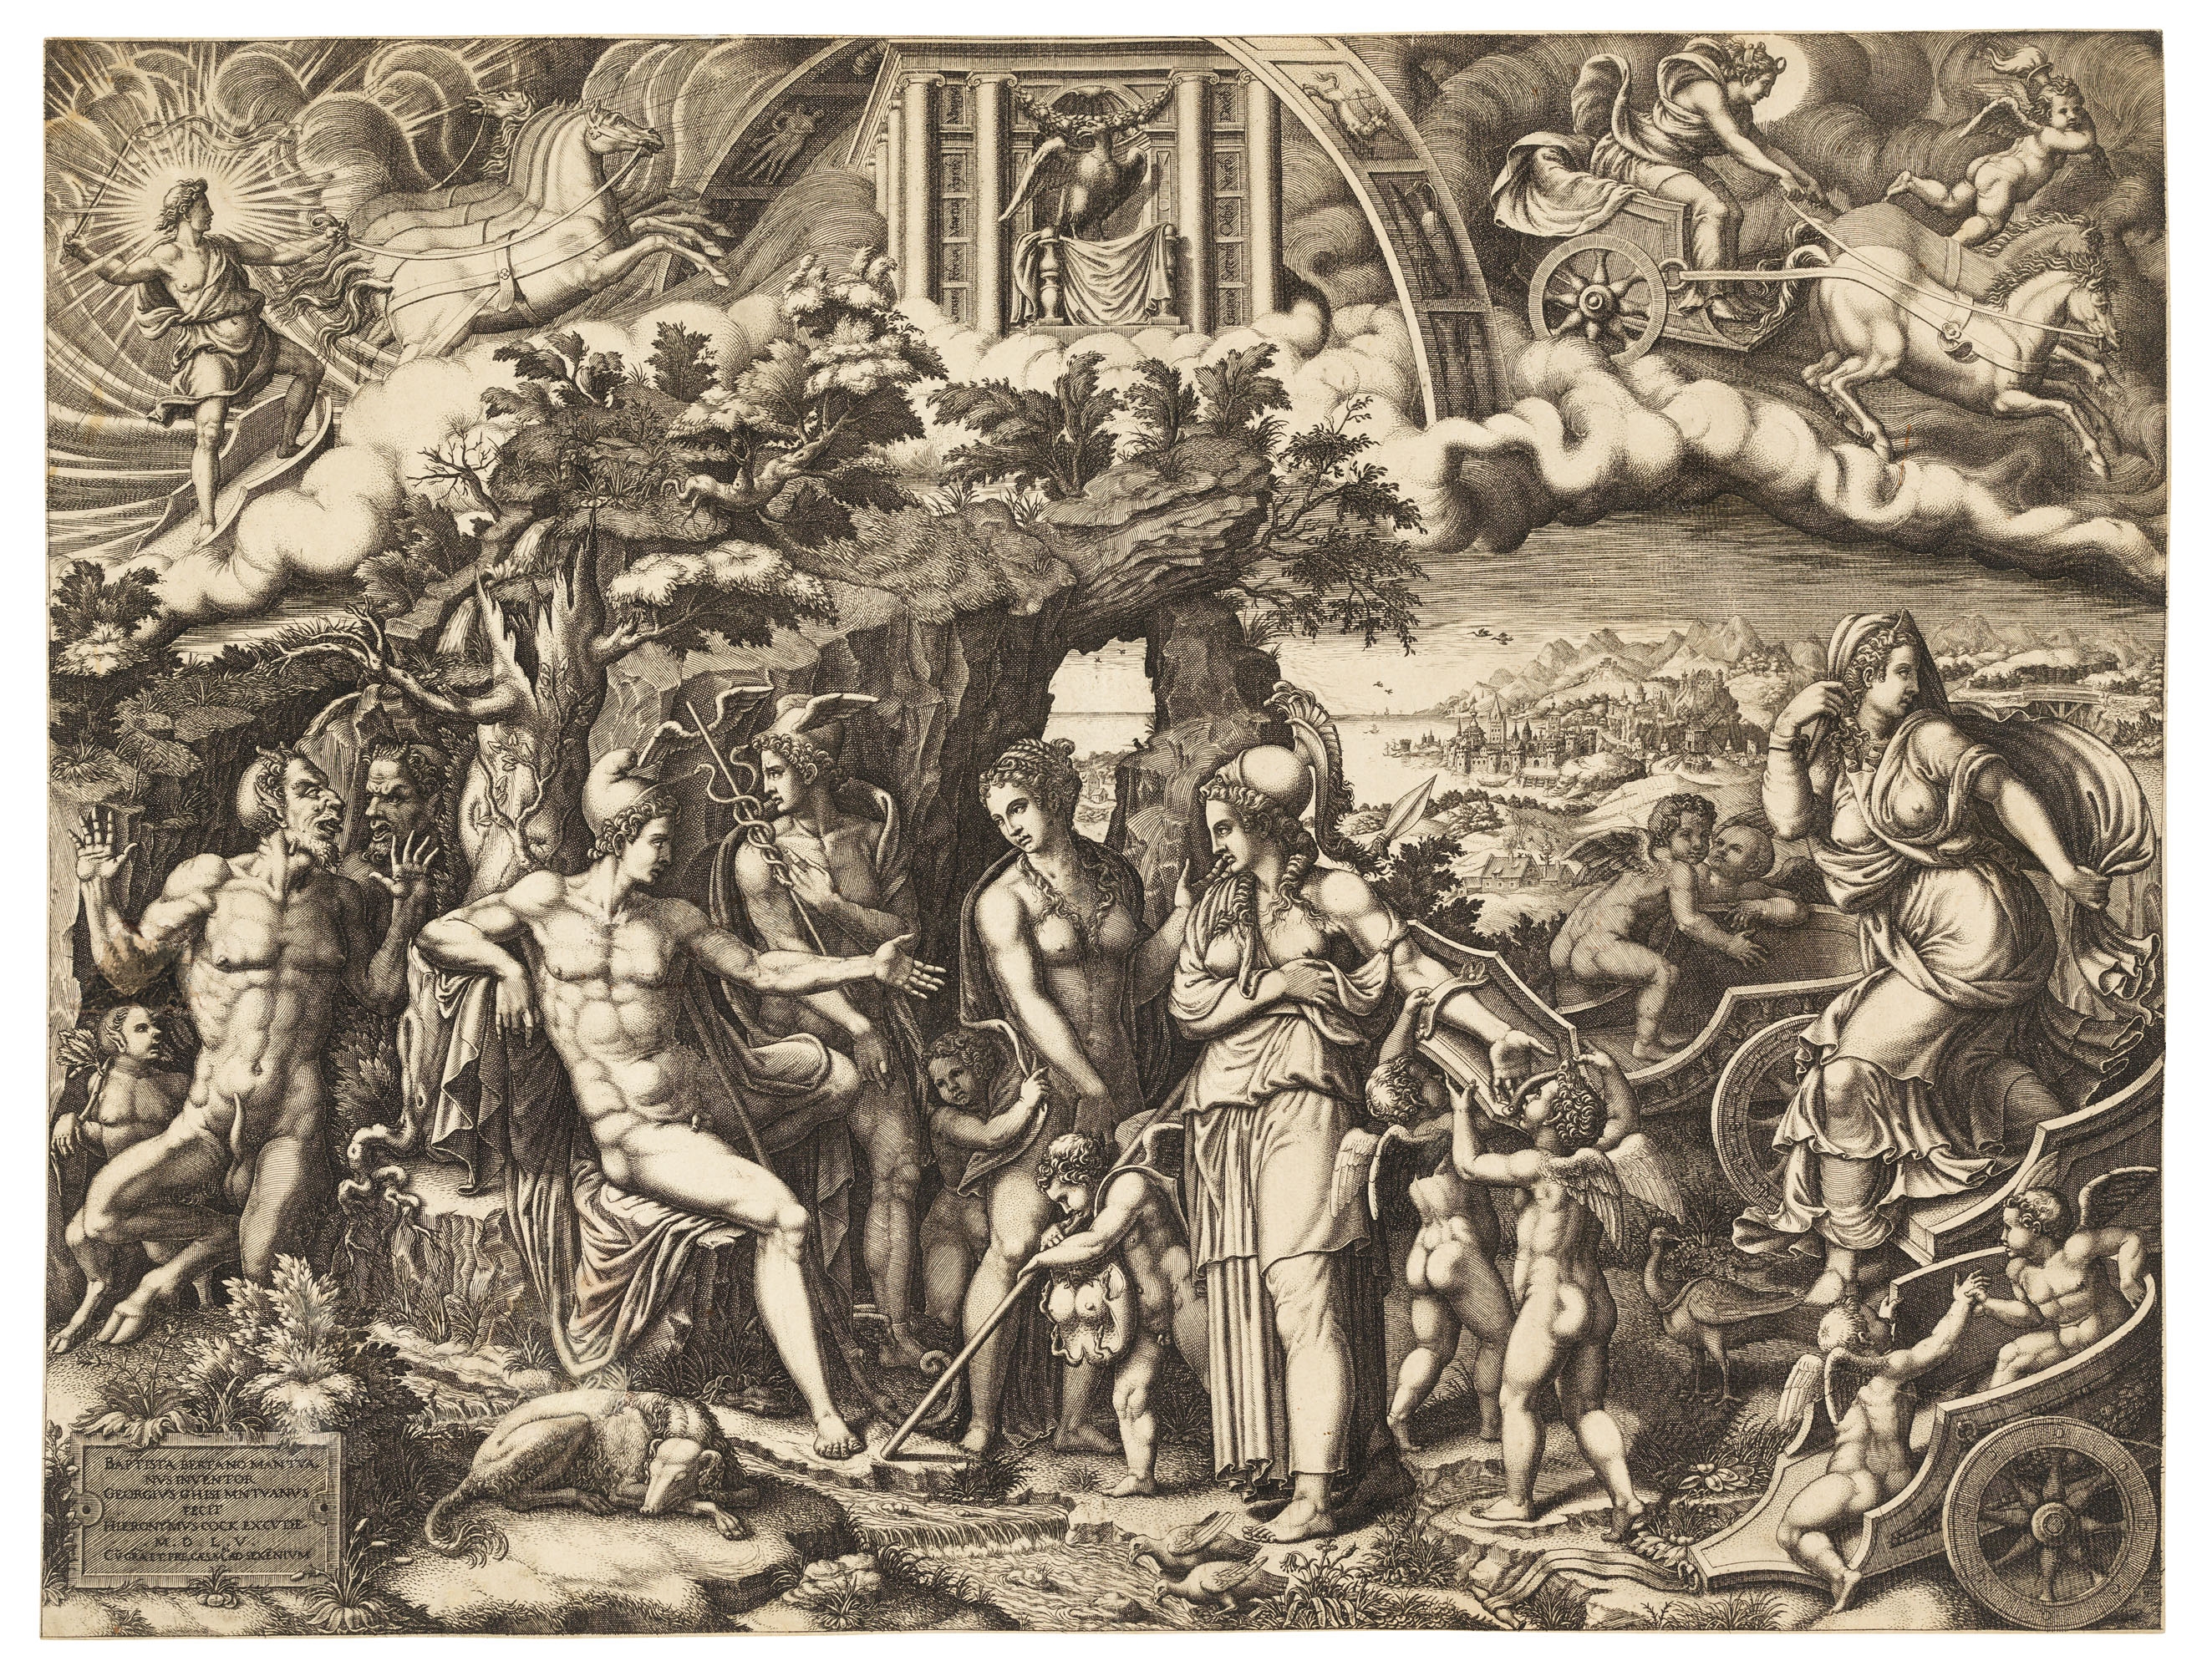 The Judgement of Paris by Giorgio Mantovano Ghisi, Giovanni Battista Bertani, 1555